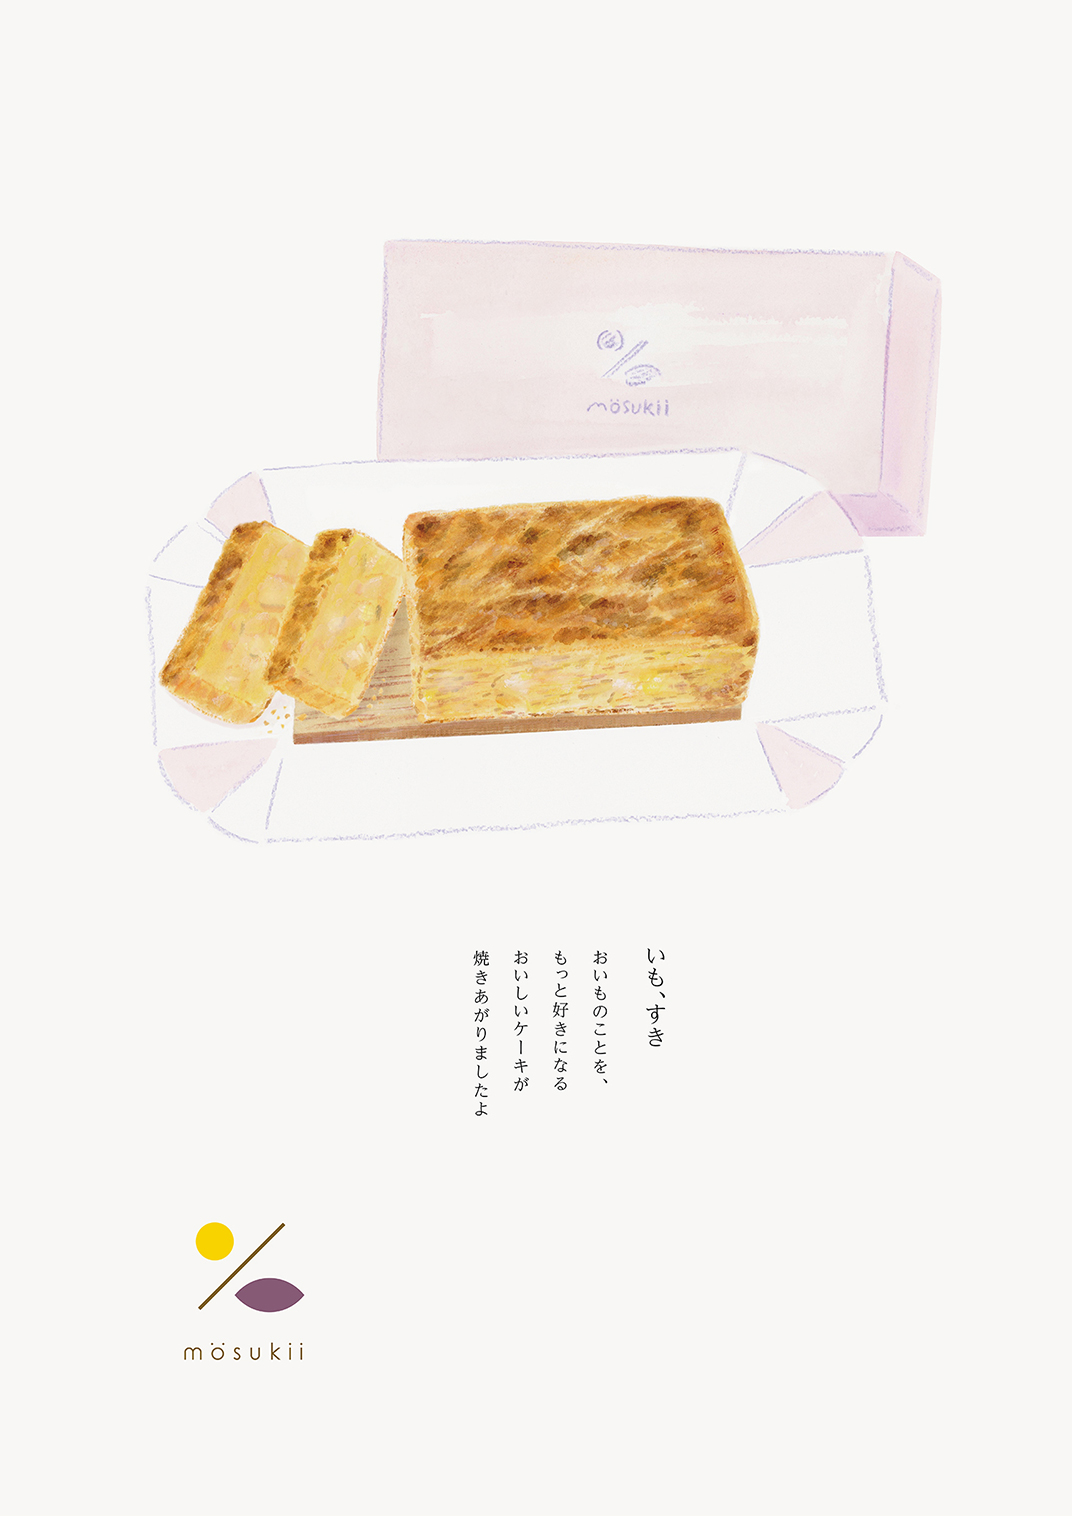 面包店mosukii标志设计 日本 深圳 上海 北京 广州 武汉 咖啡店 餐饮商业 logo设计 vi设计 空间设计